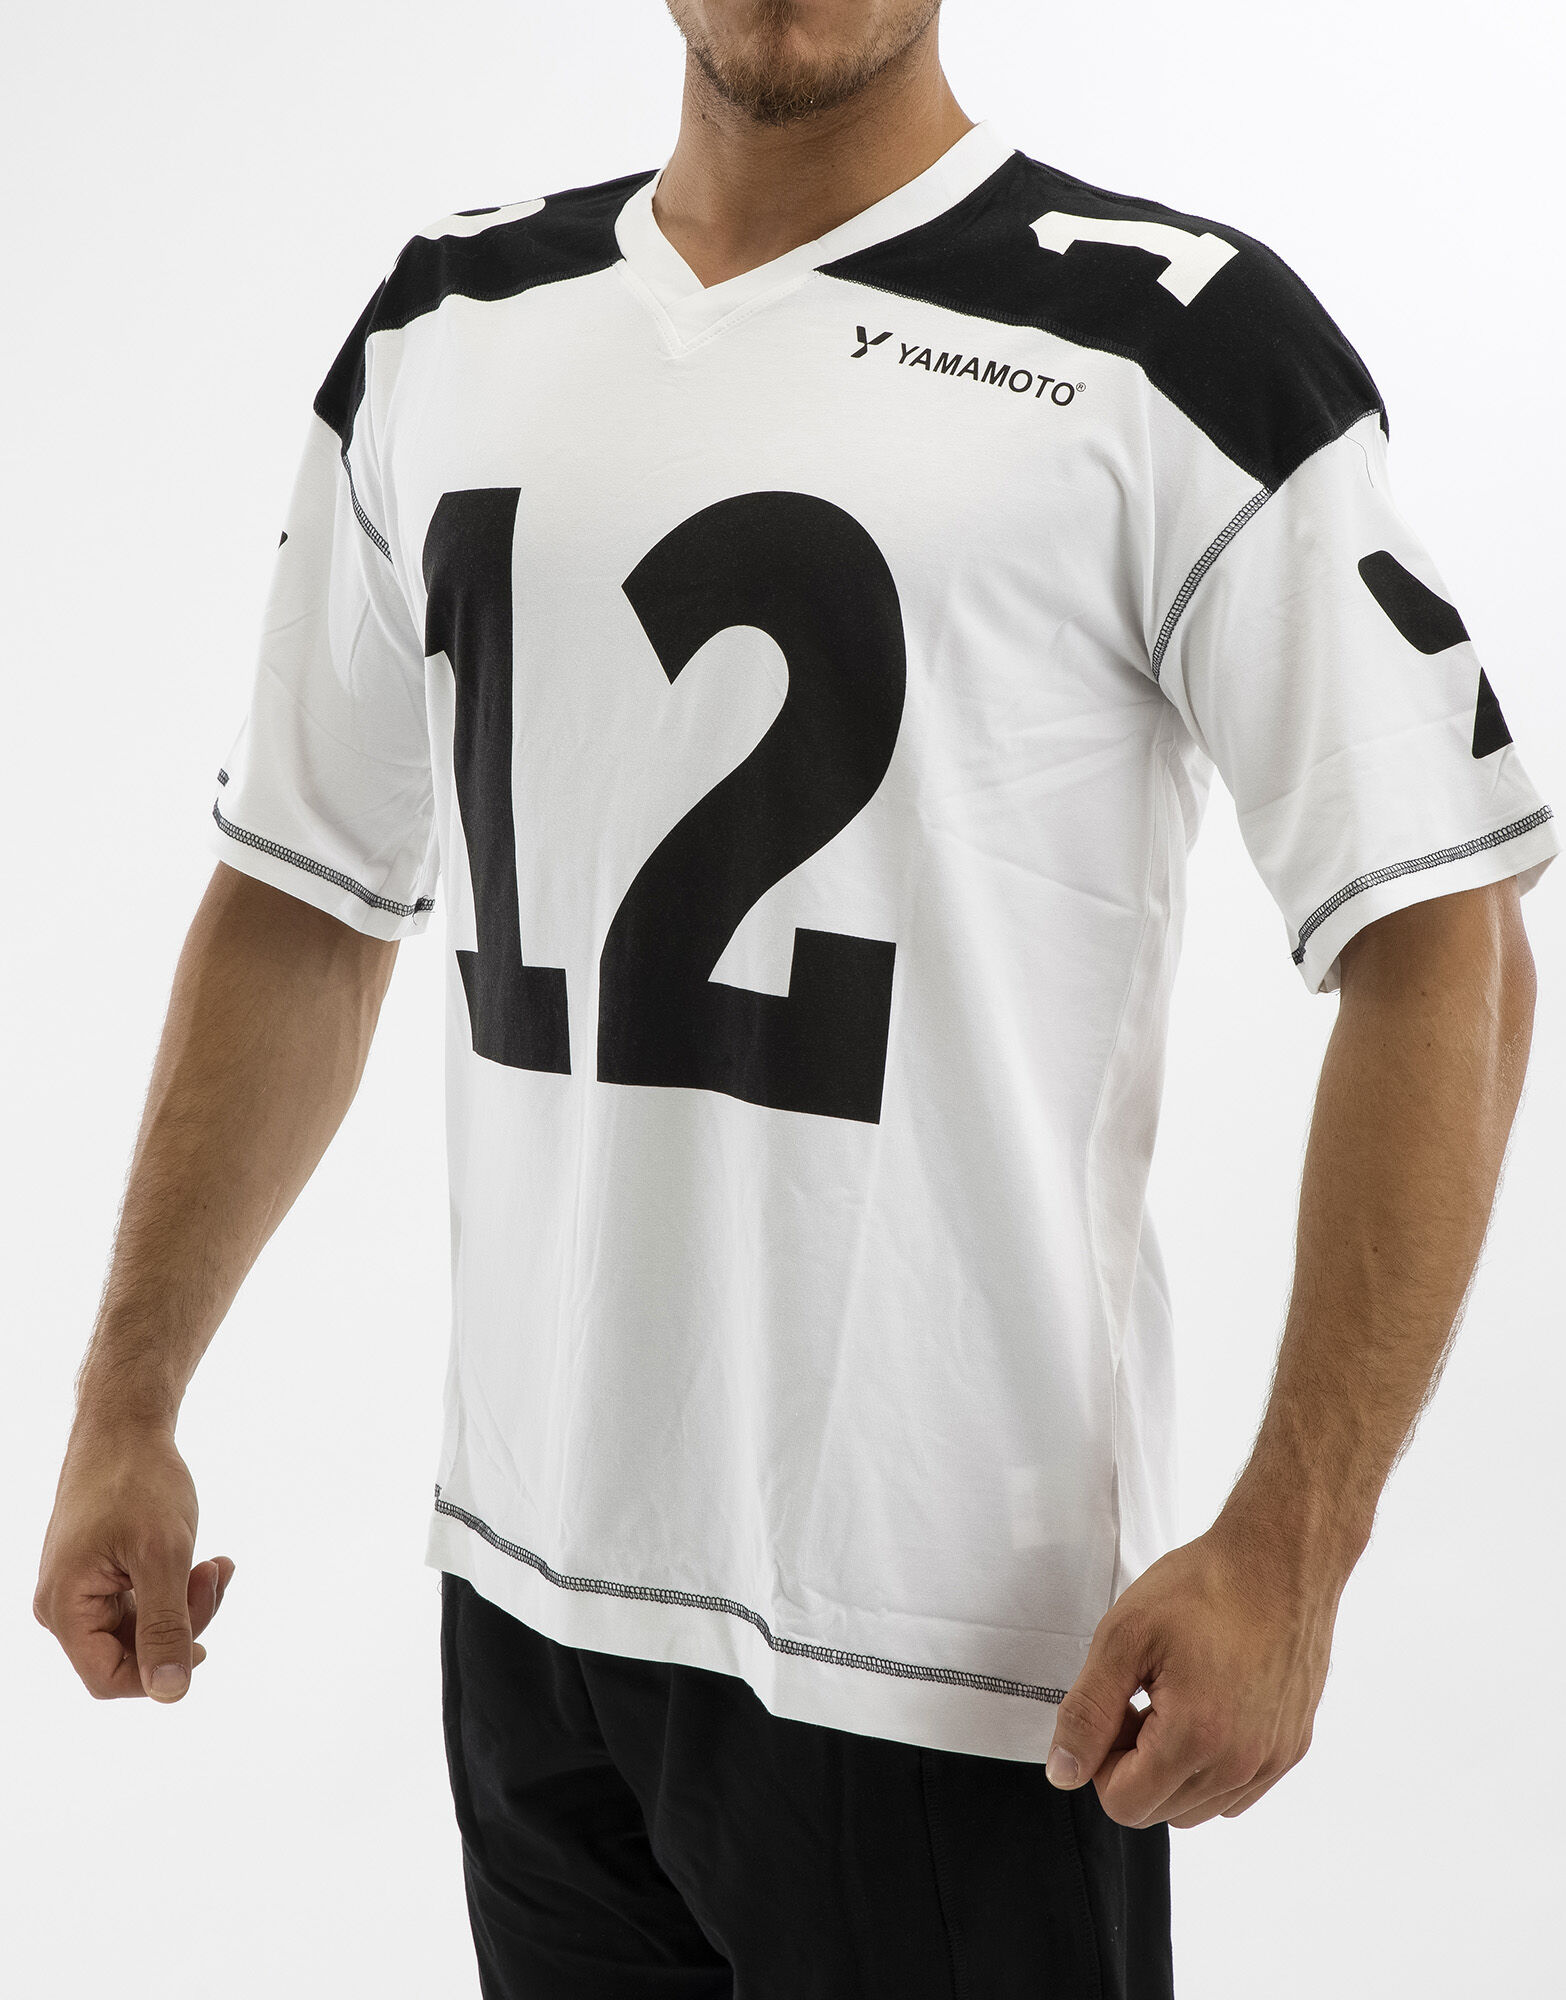 YAMAMOTO OUTFIT Man Football T-Shirt Colore: Bianco/nero L